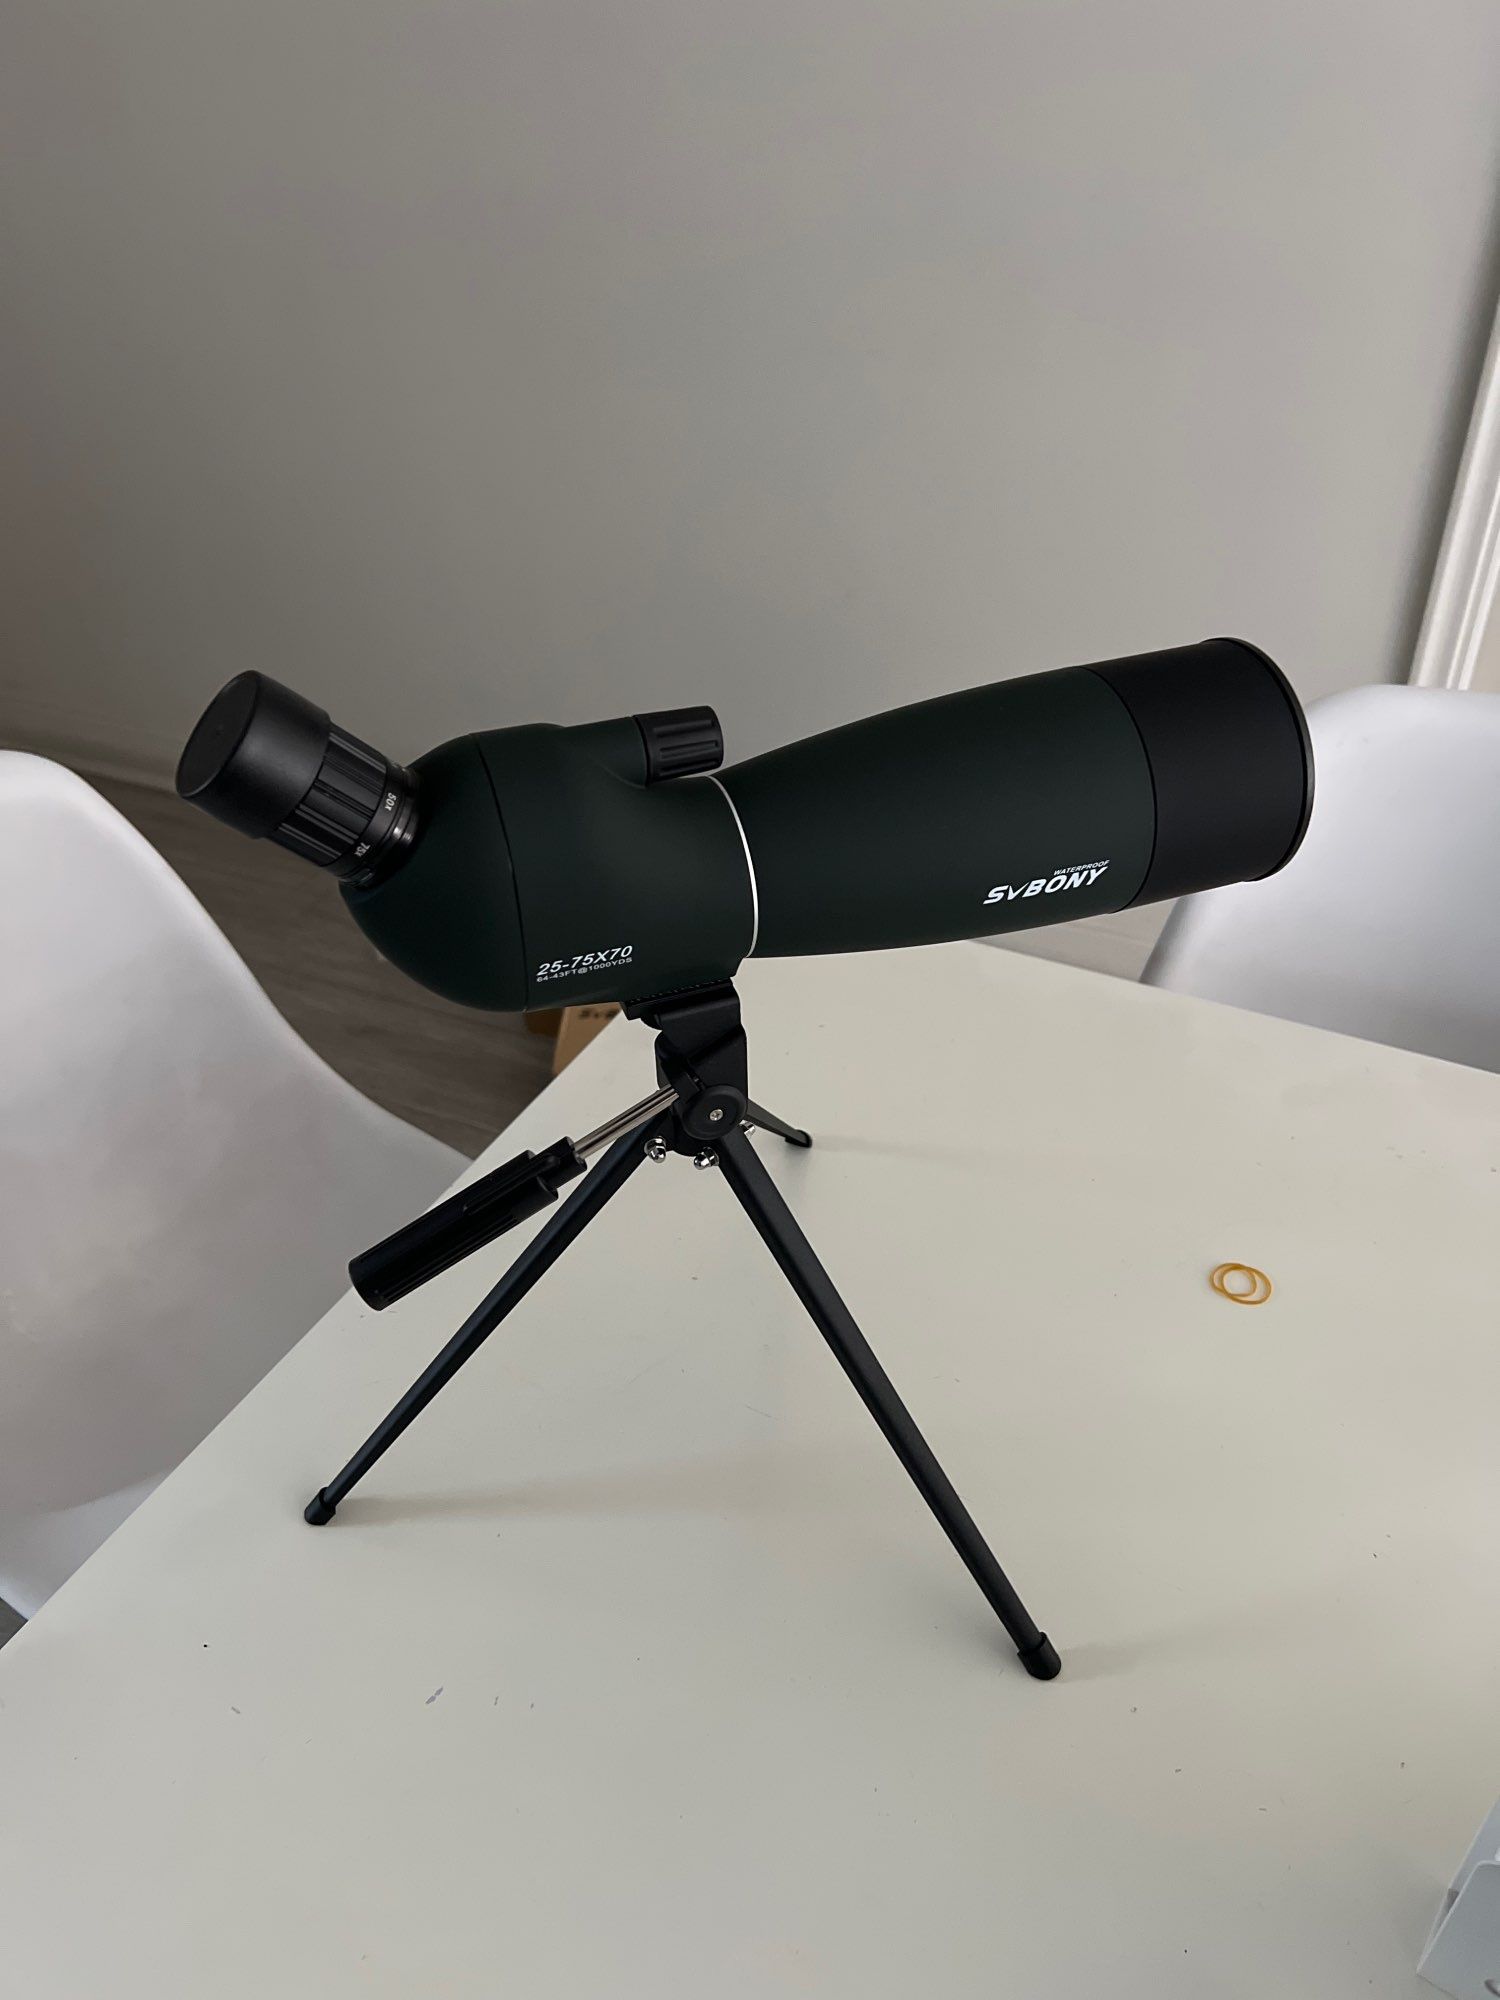 Телескоп SVBONY 25-75x70mm SV28  BAK4 Монокуляр, підзорна труба